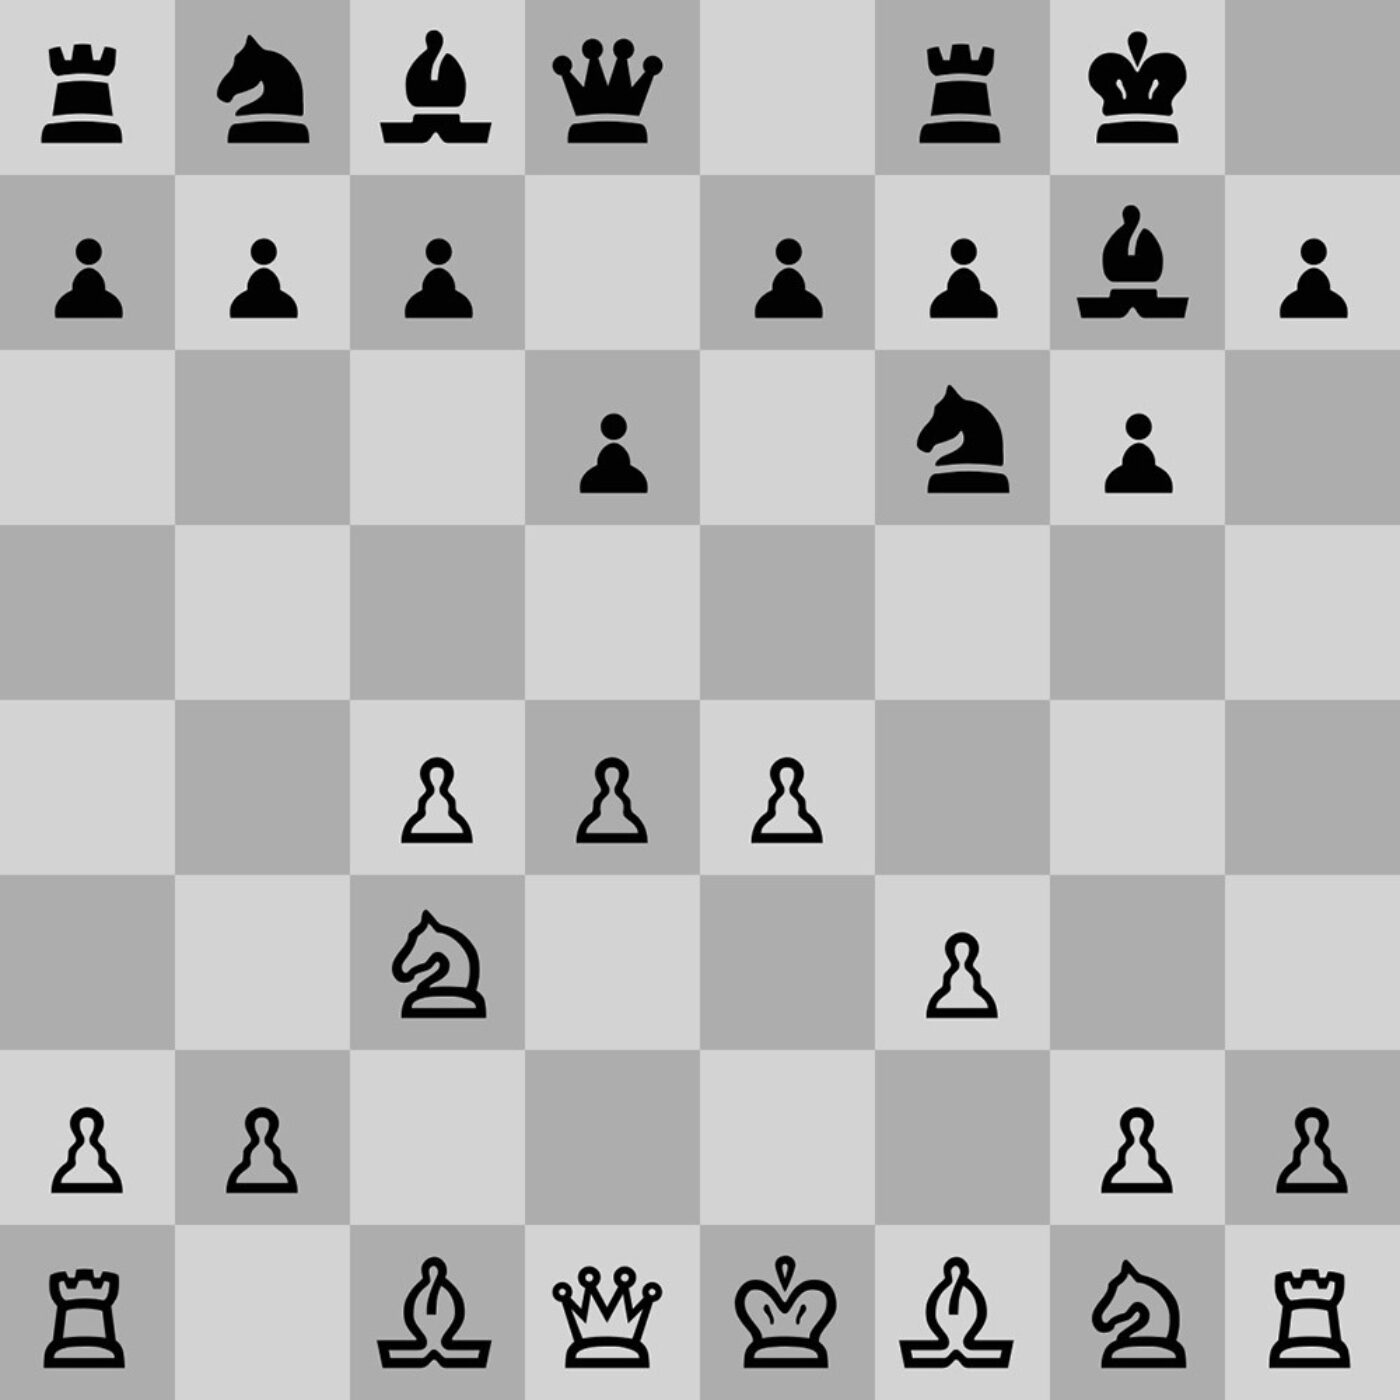 chessmaster 10 vs fritz 12